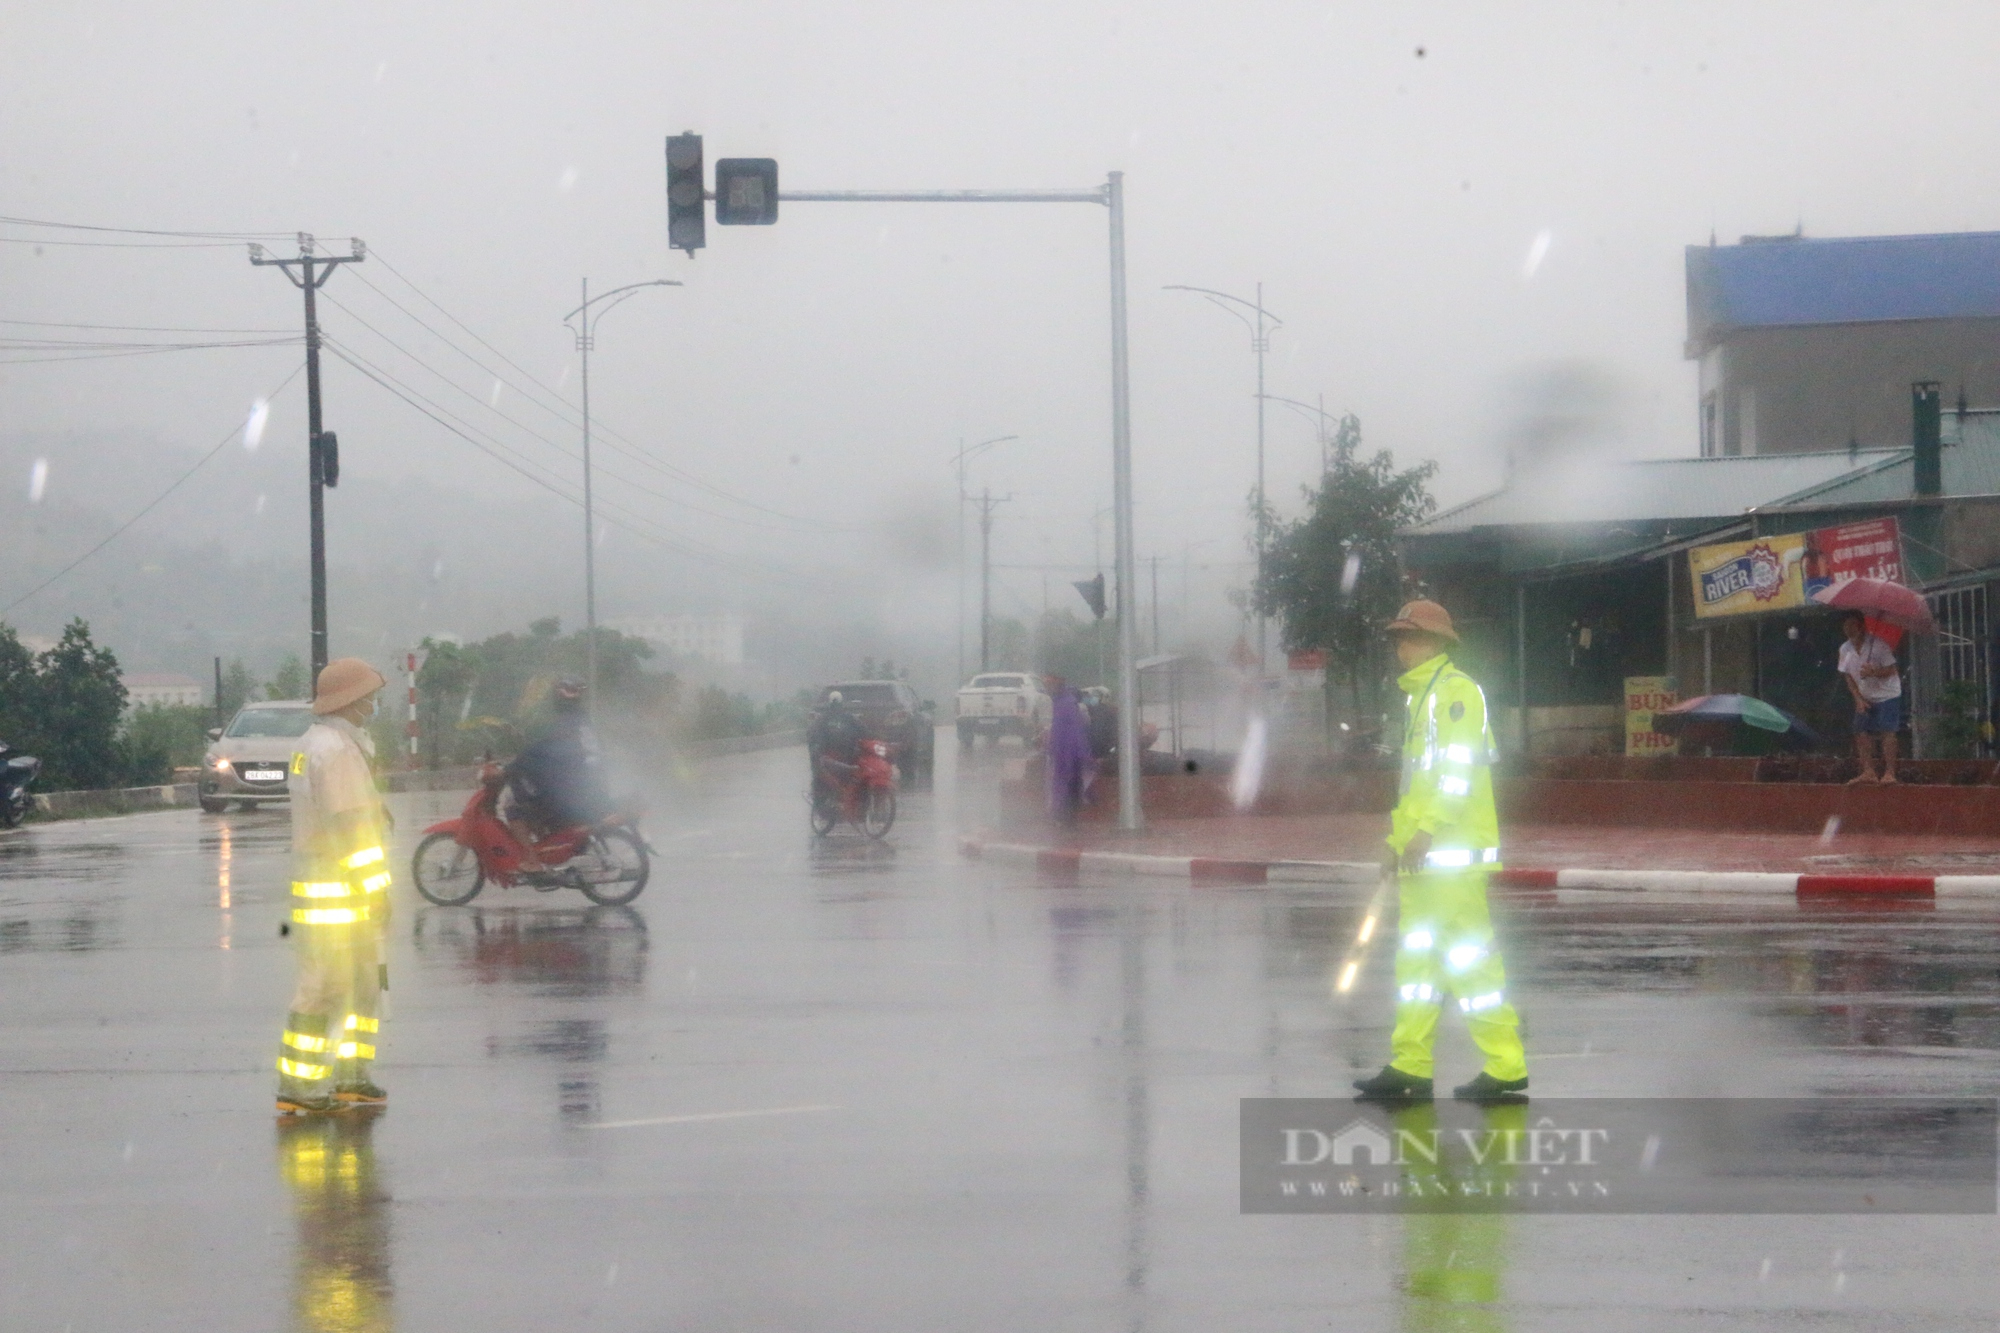  Chùm ảnh: Lực lượng CSGT Hoà Bình đầm mưa phân luồng giao thông phục vụ  - Ảnh 2.